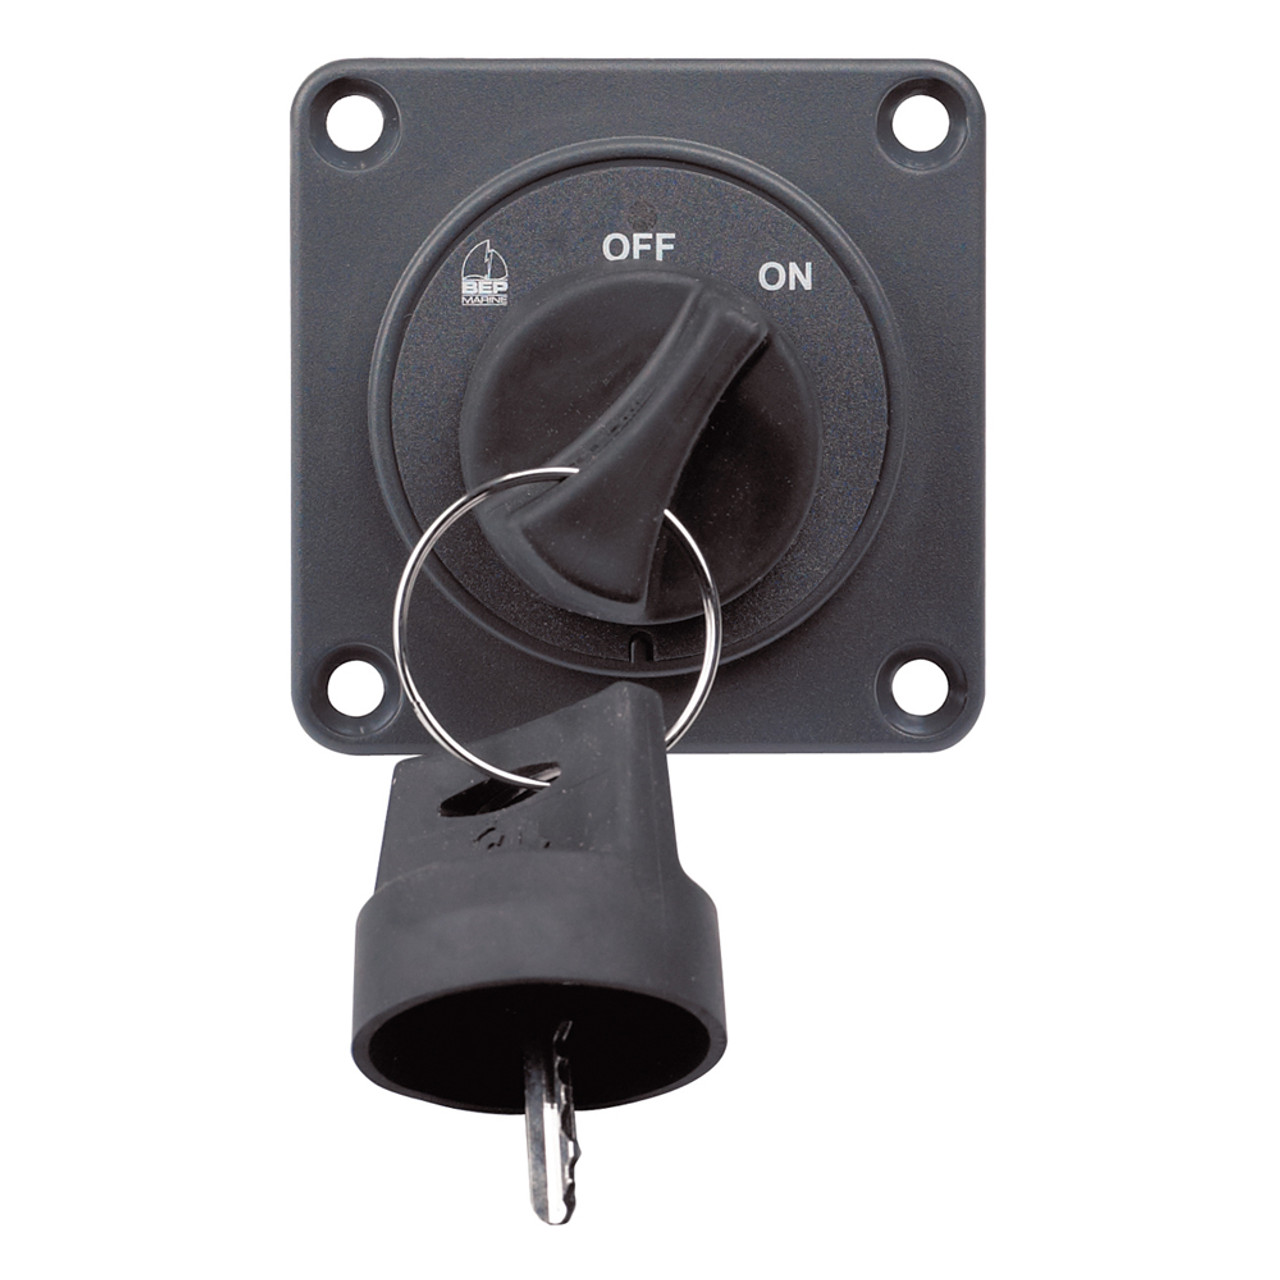 Interrupteur à clé marche/arrêt BEP pour interrupteurs de batterie